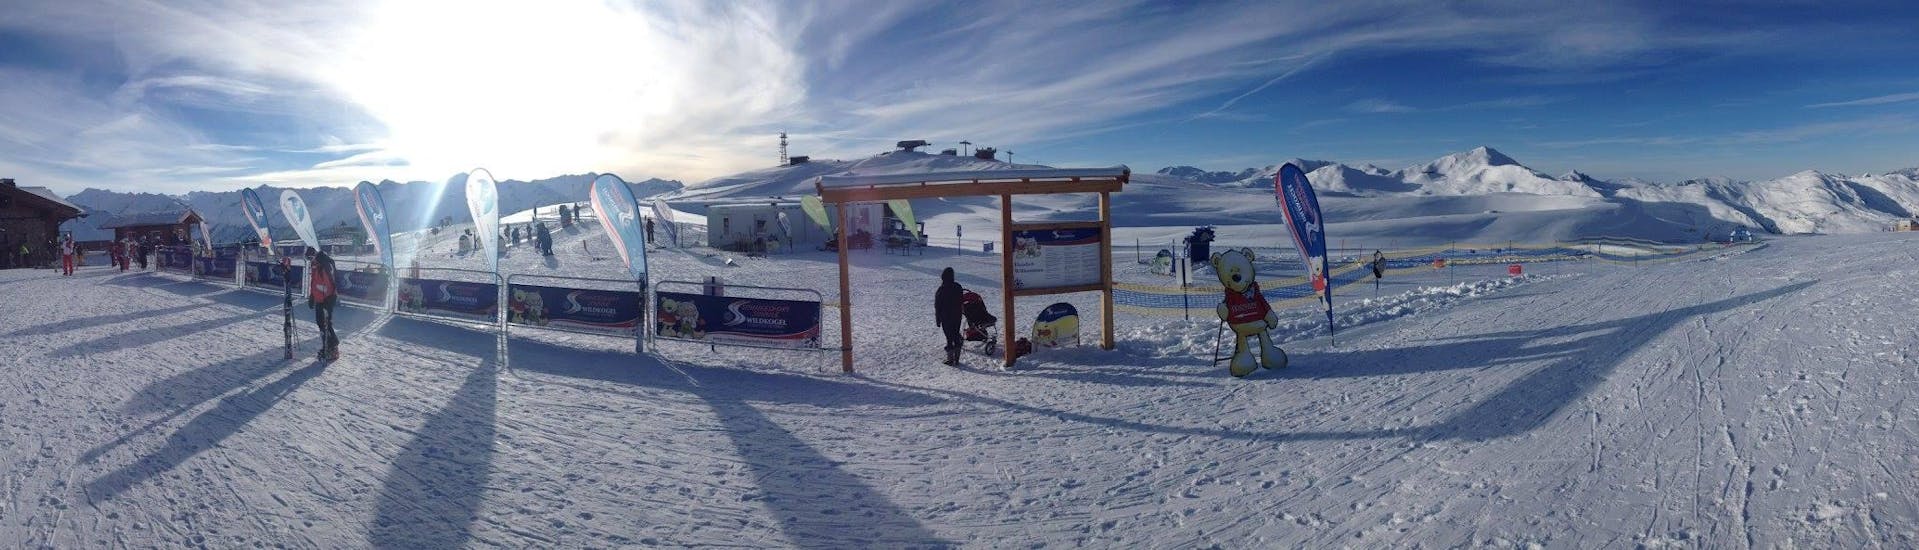 Landschaftlich schöne Pisten beim ganztägigen Kinder-Skikurs (3-14 J.) für alle Levels mit der Schneesportschule Wildkogel.